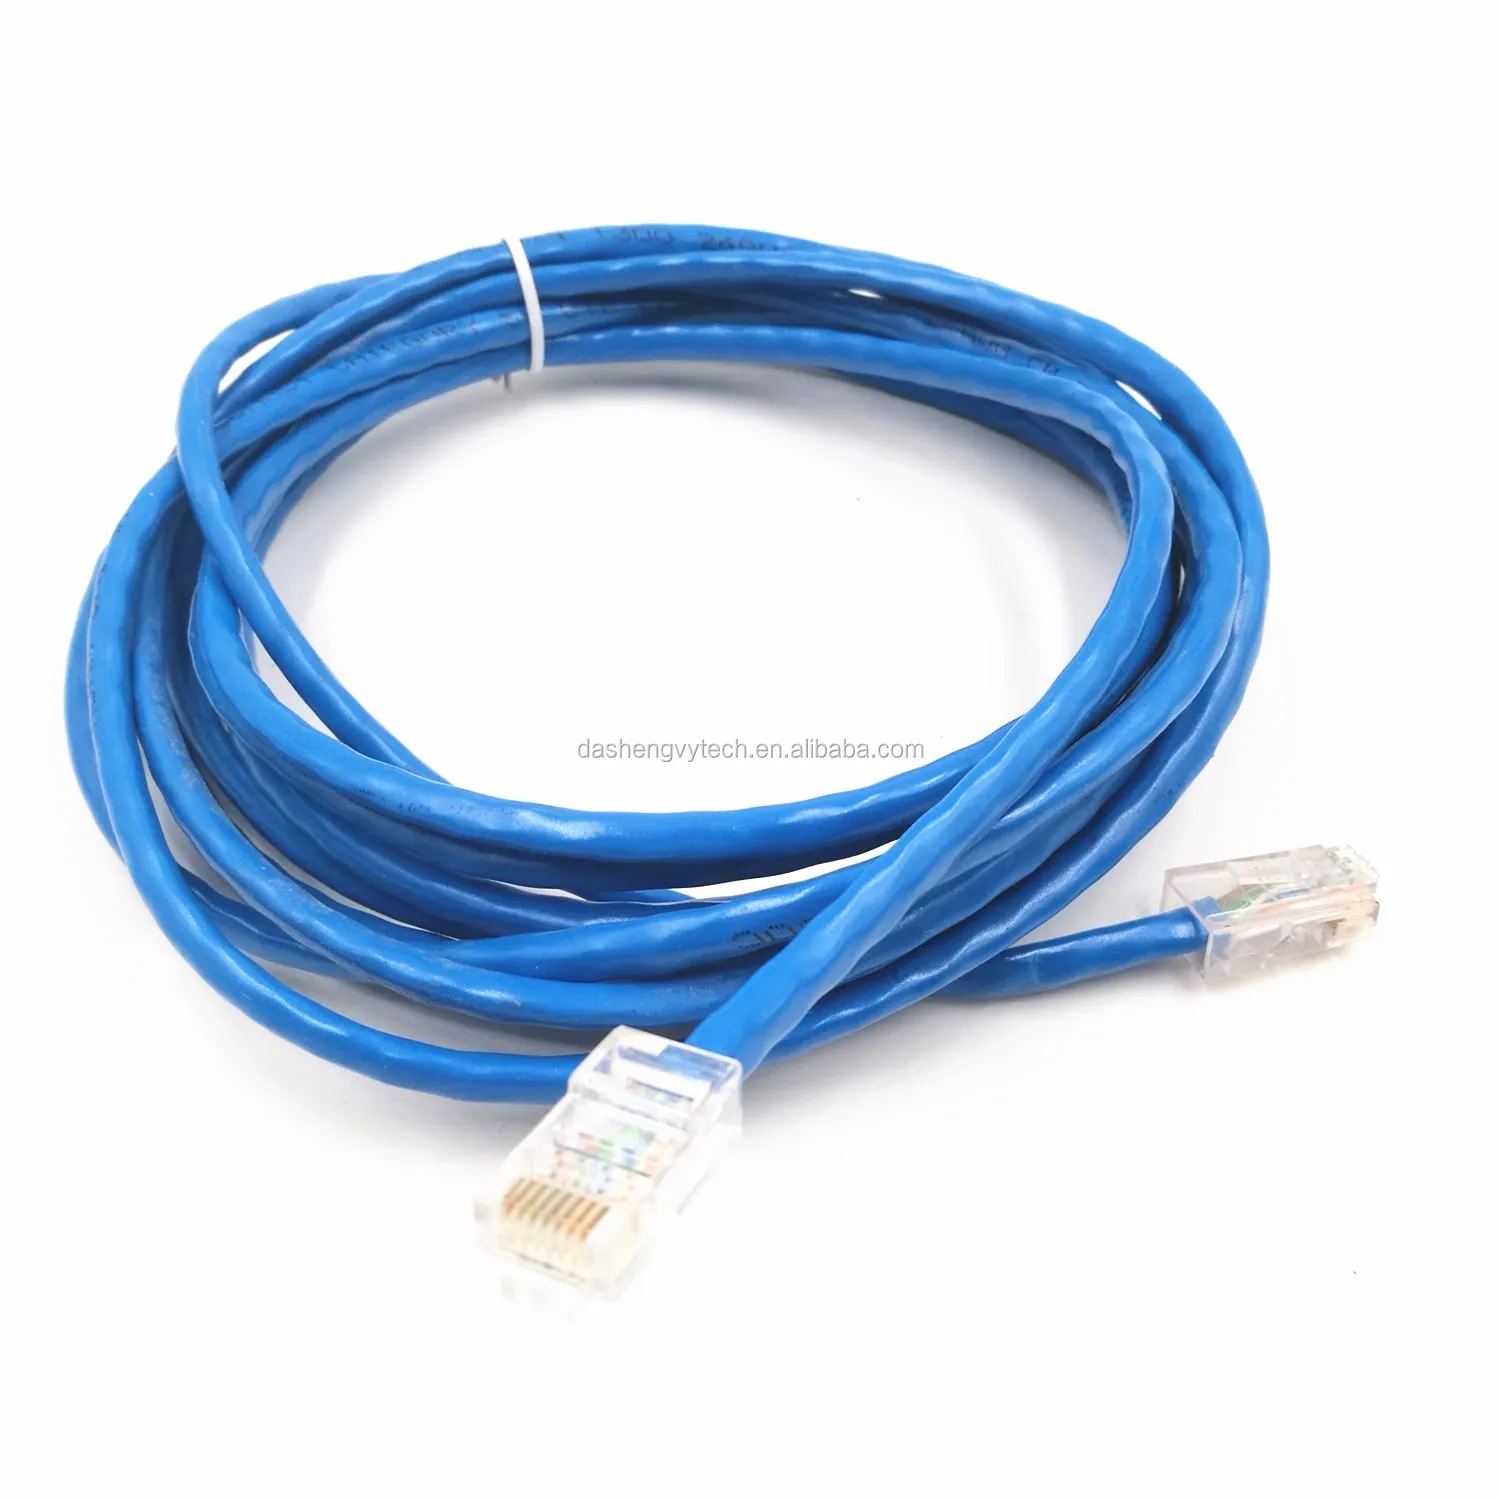 8 芯 rj45 成型网络跳线电脑路由器室内网络电缆 